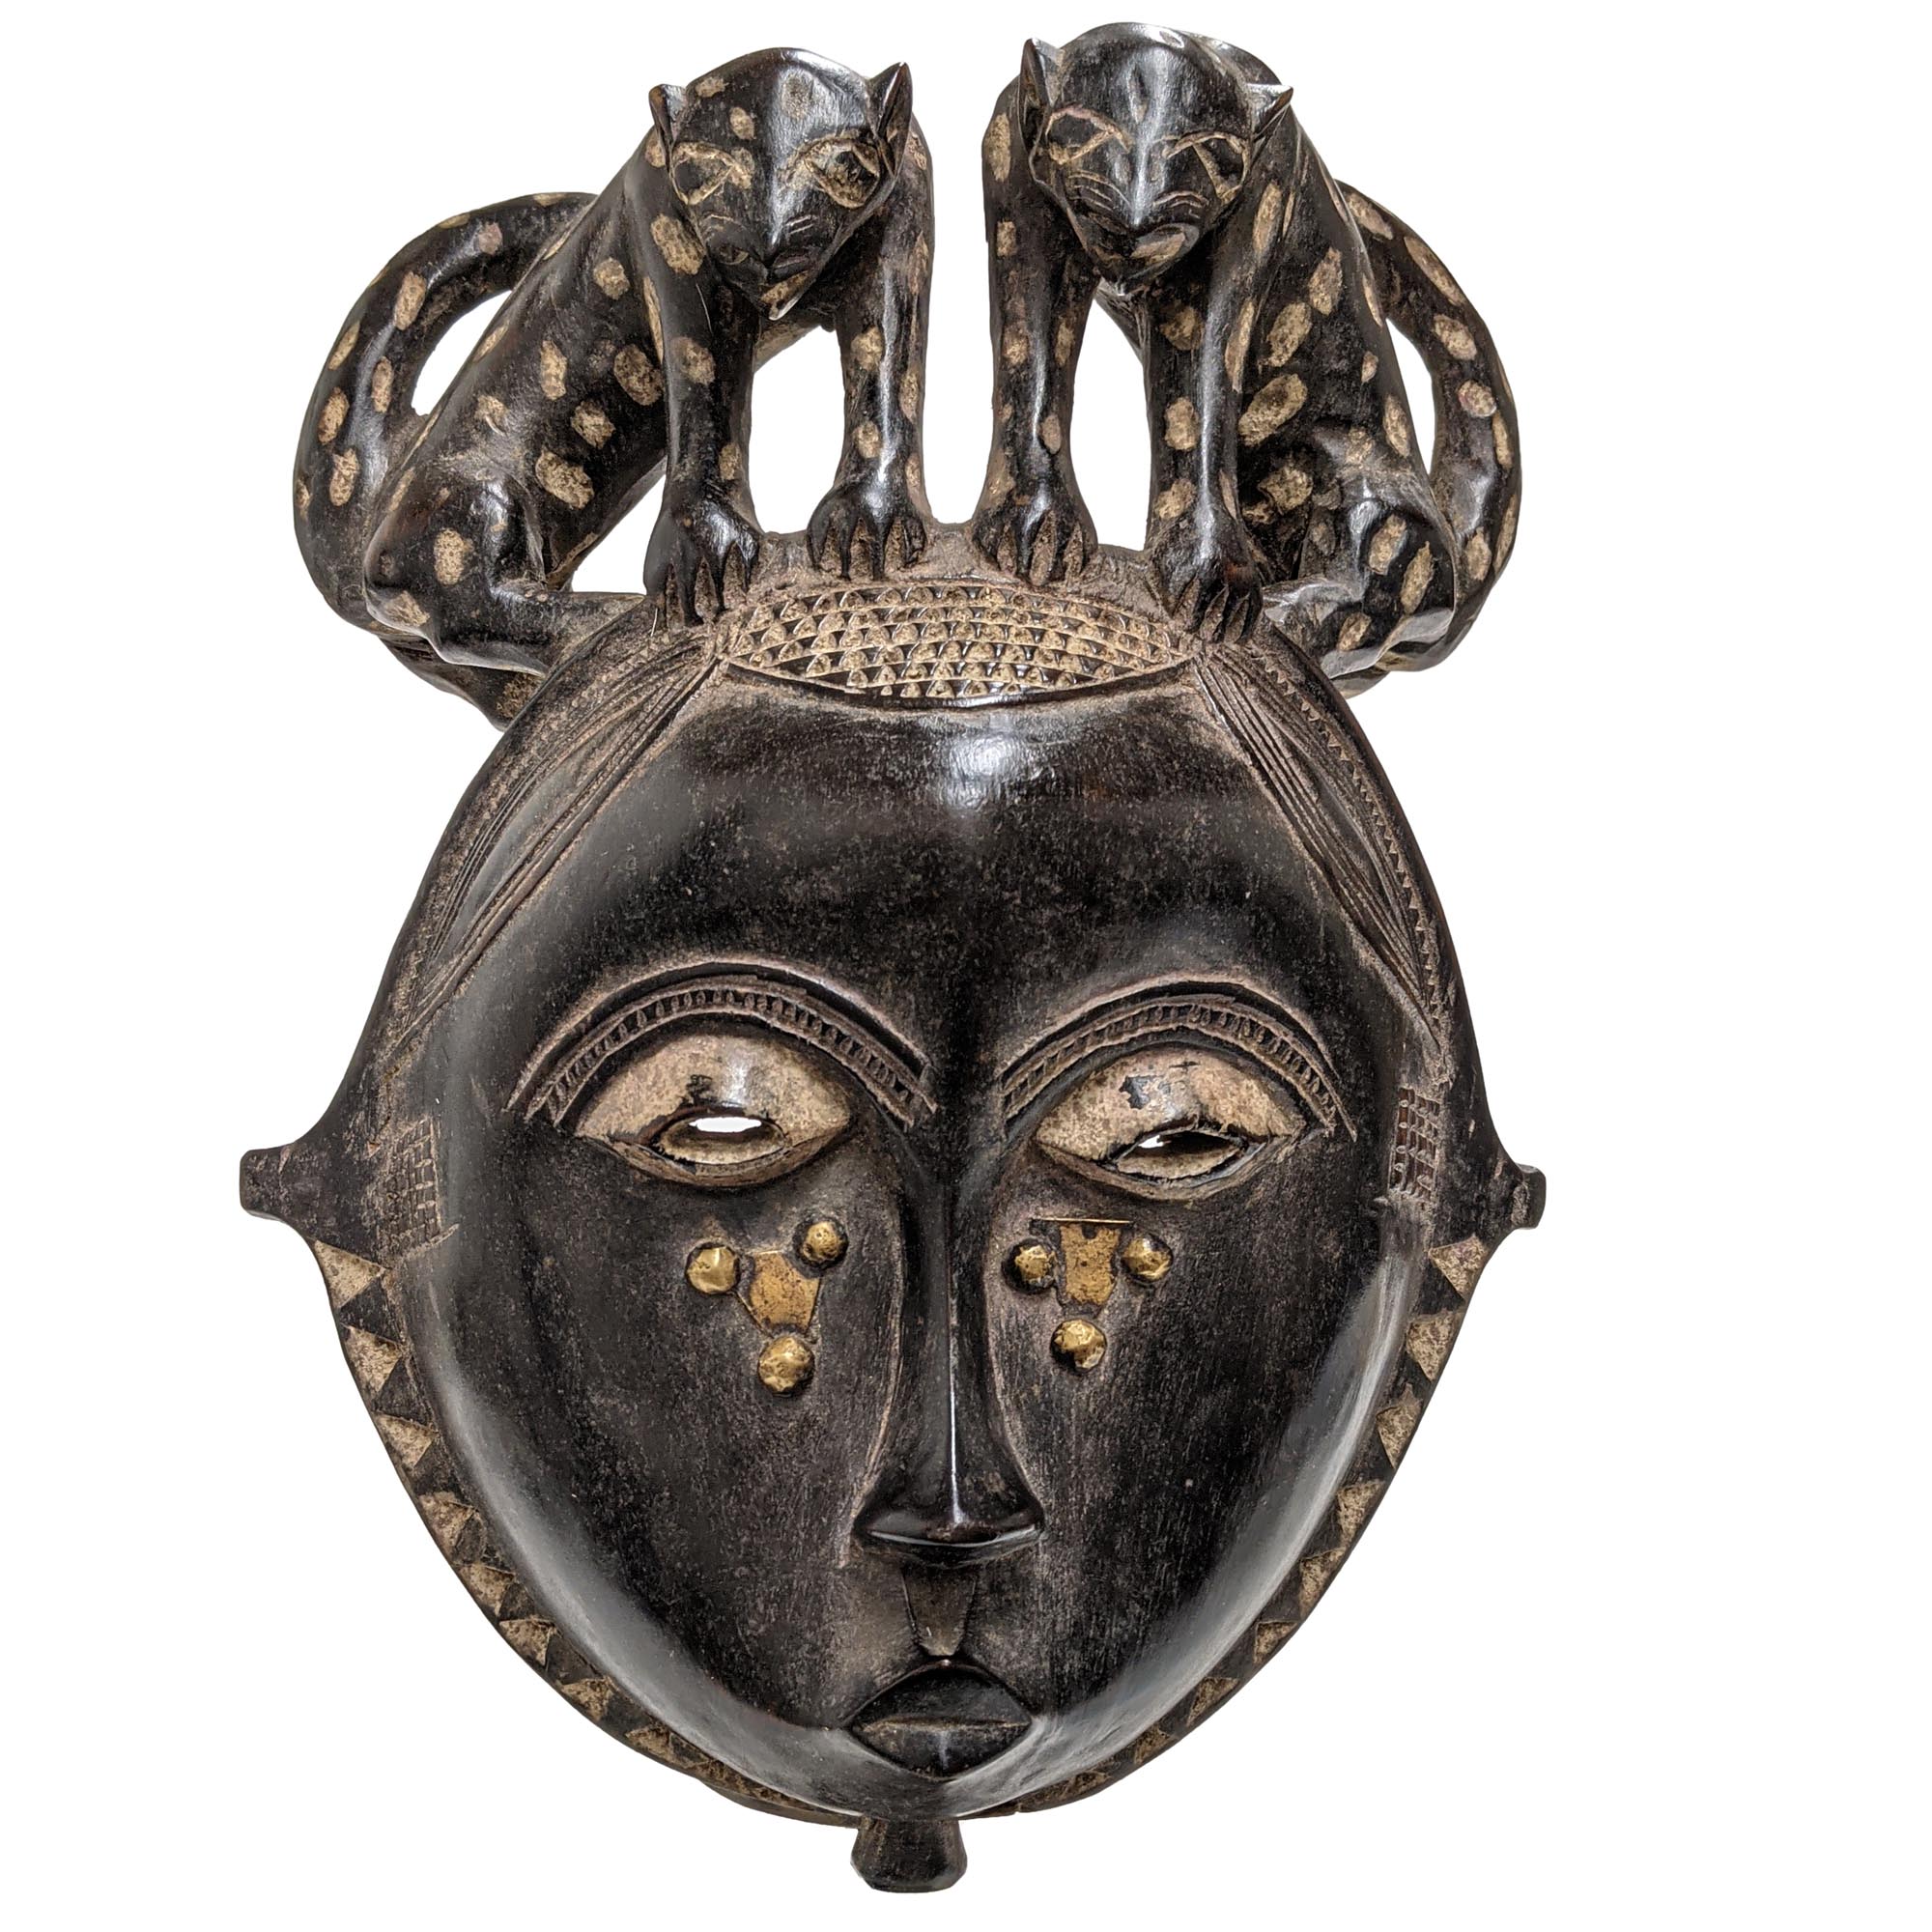 2021年春の アフリカ コートジボワール バウレ族 マスク 木彫り 仮面 No.349 アフリカンアート 彫刻 祭り用品 